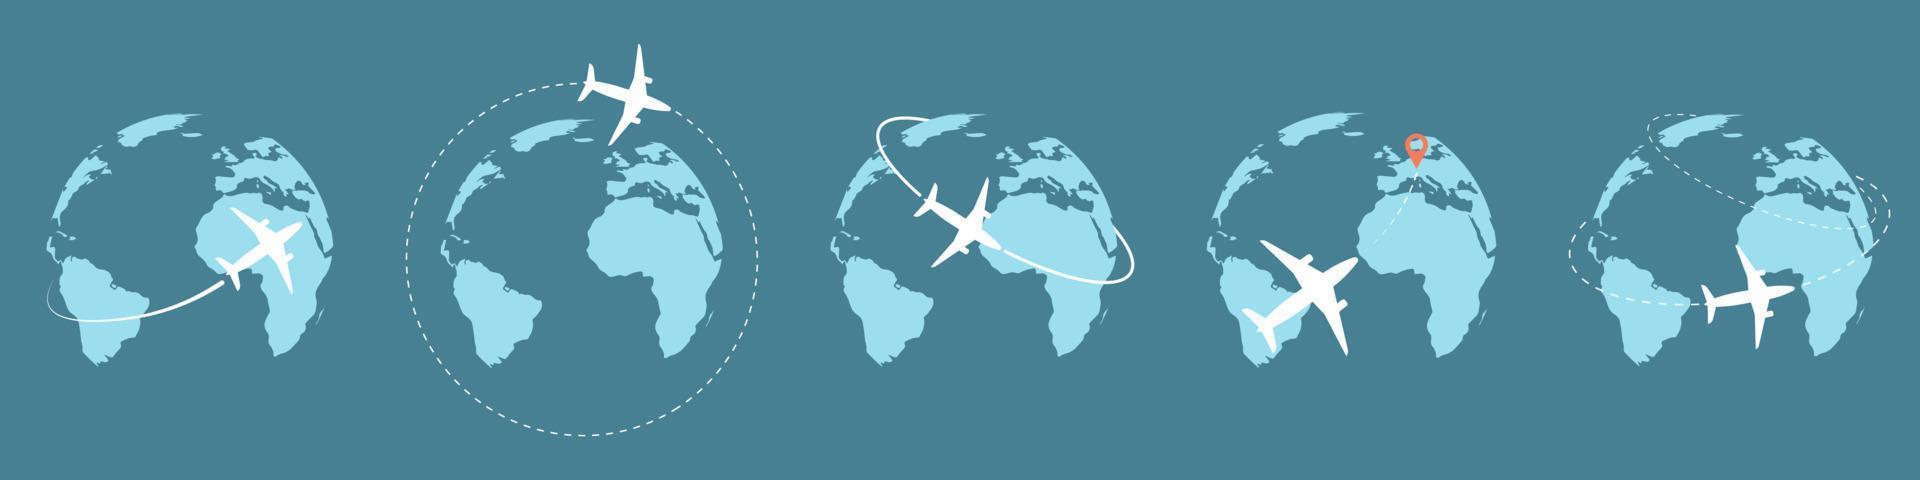 reispictogrammen met vliegtuig vliegen rond de aarde. vector illustration.toerisme vervoer concept